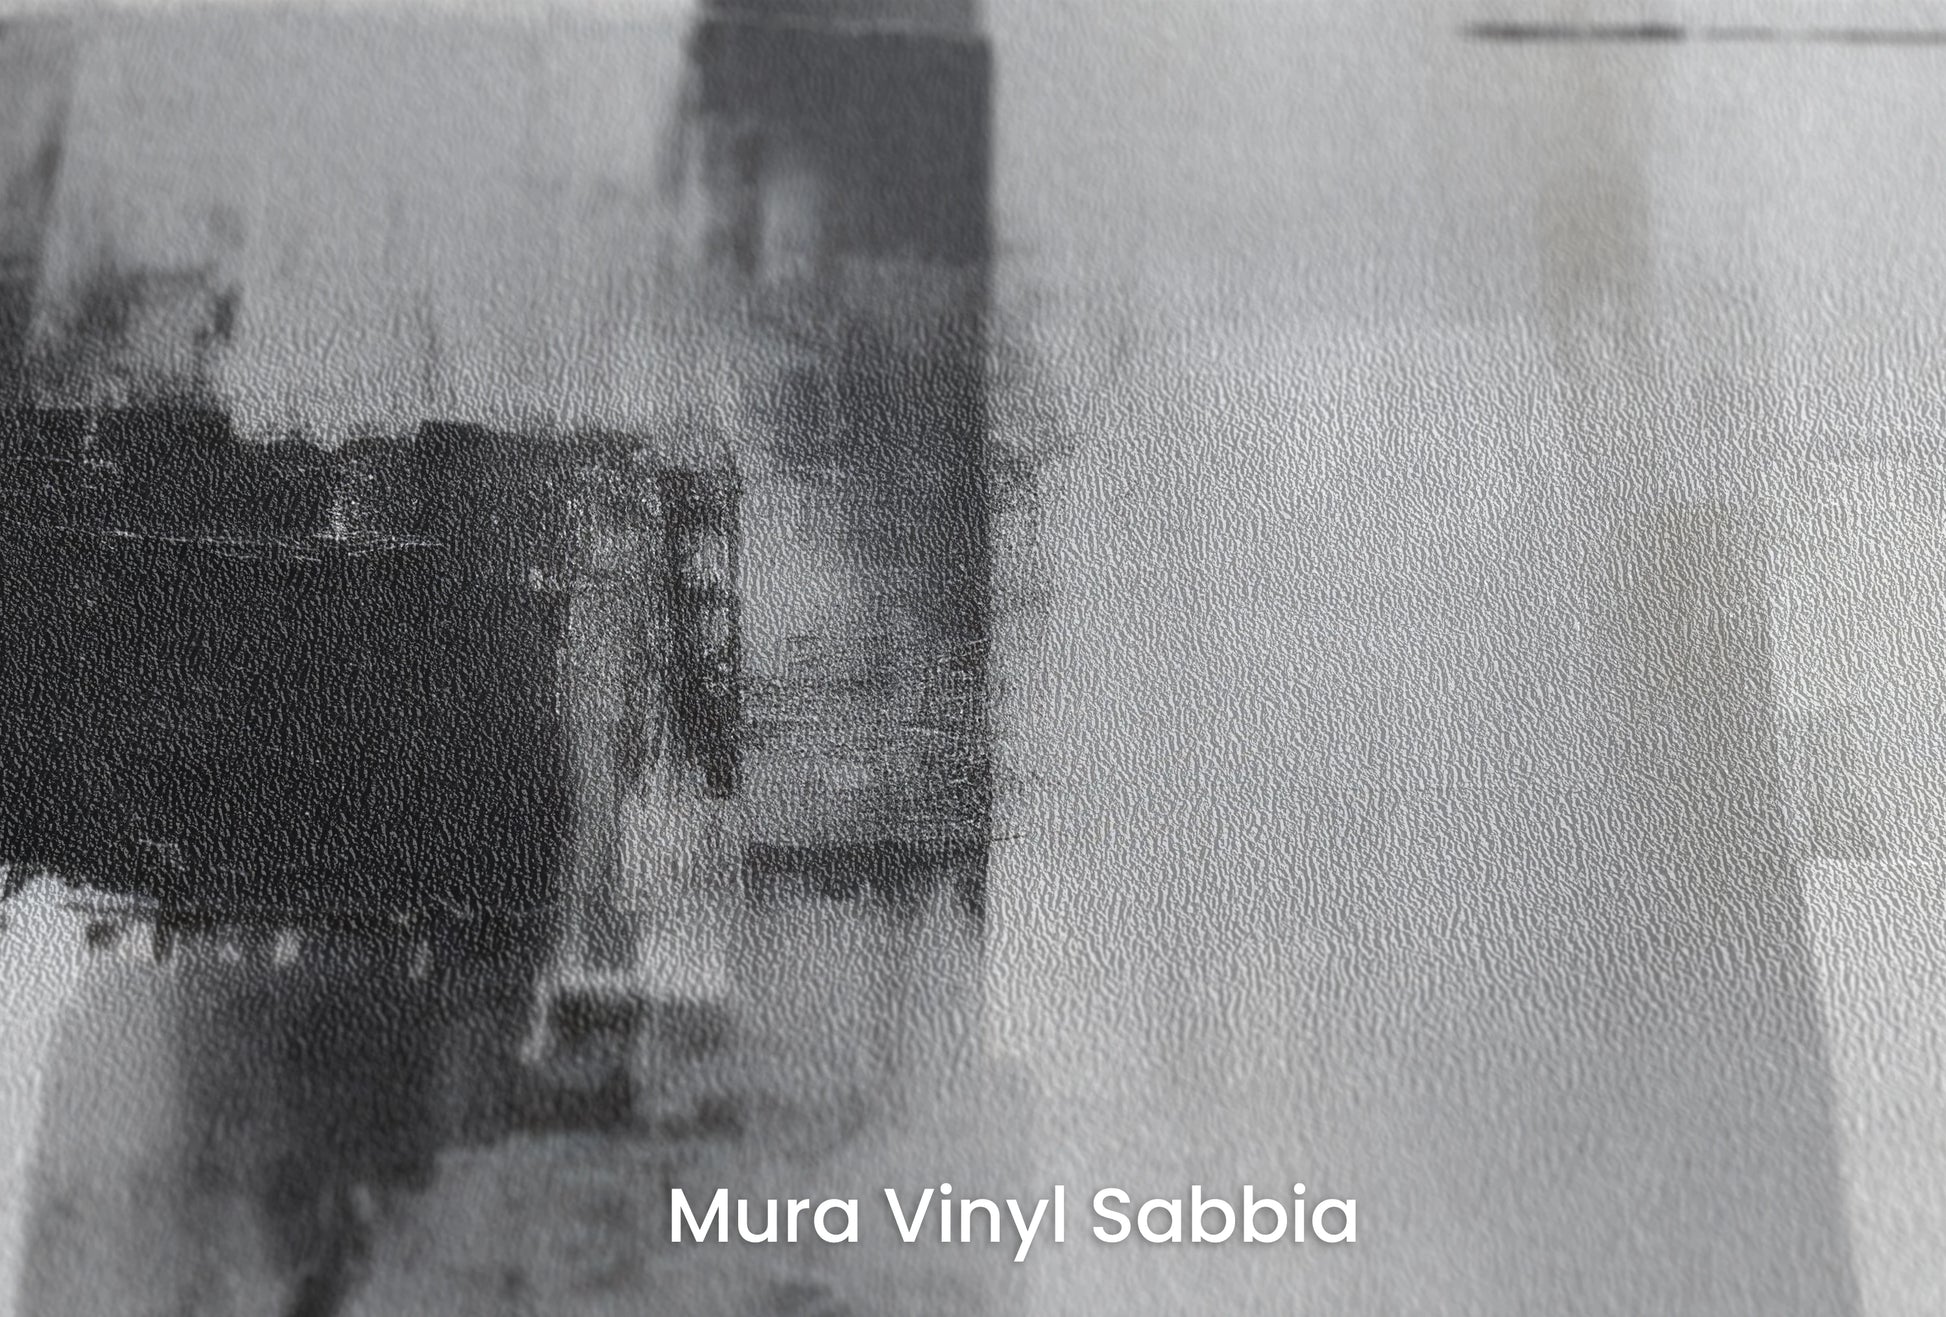 Zbliżenie na artystyczną fototapetę o nazwie Intersecting Planes na podłożu Mura Vinyl Sabbia struktura grubego ziarna piasku.